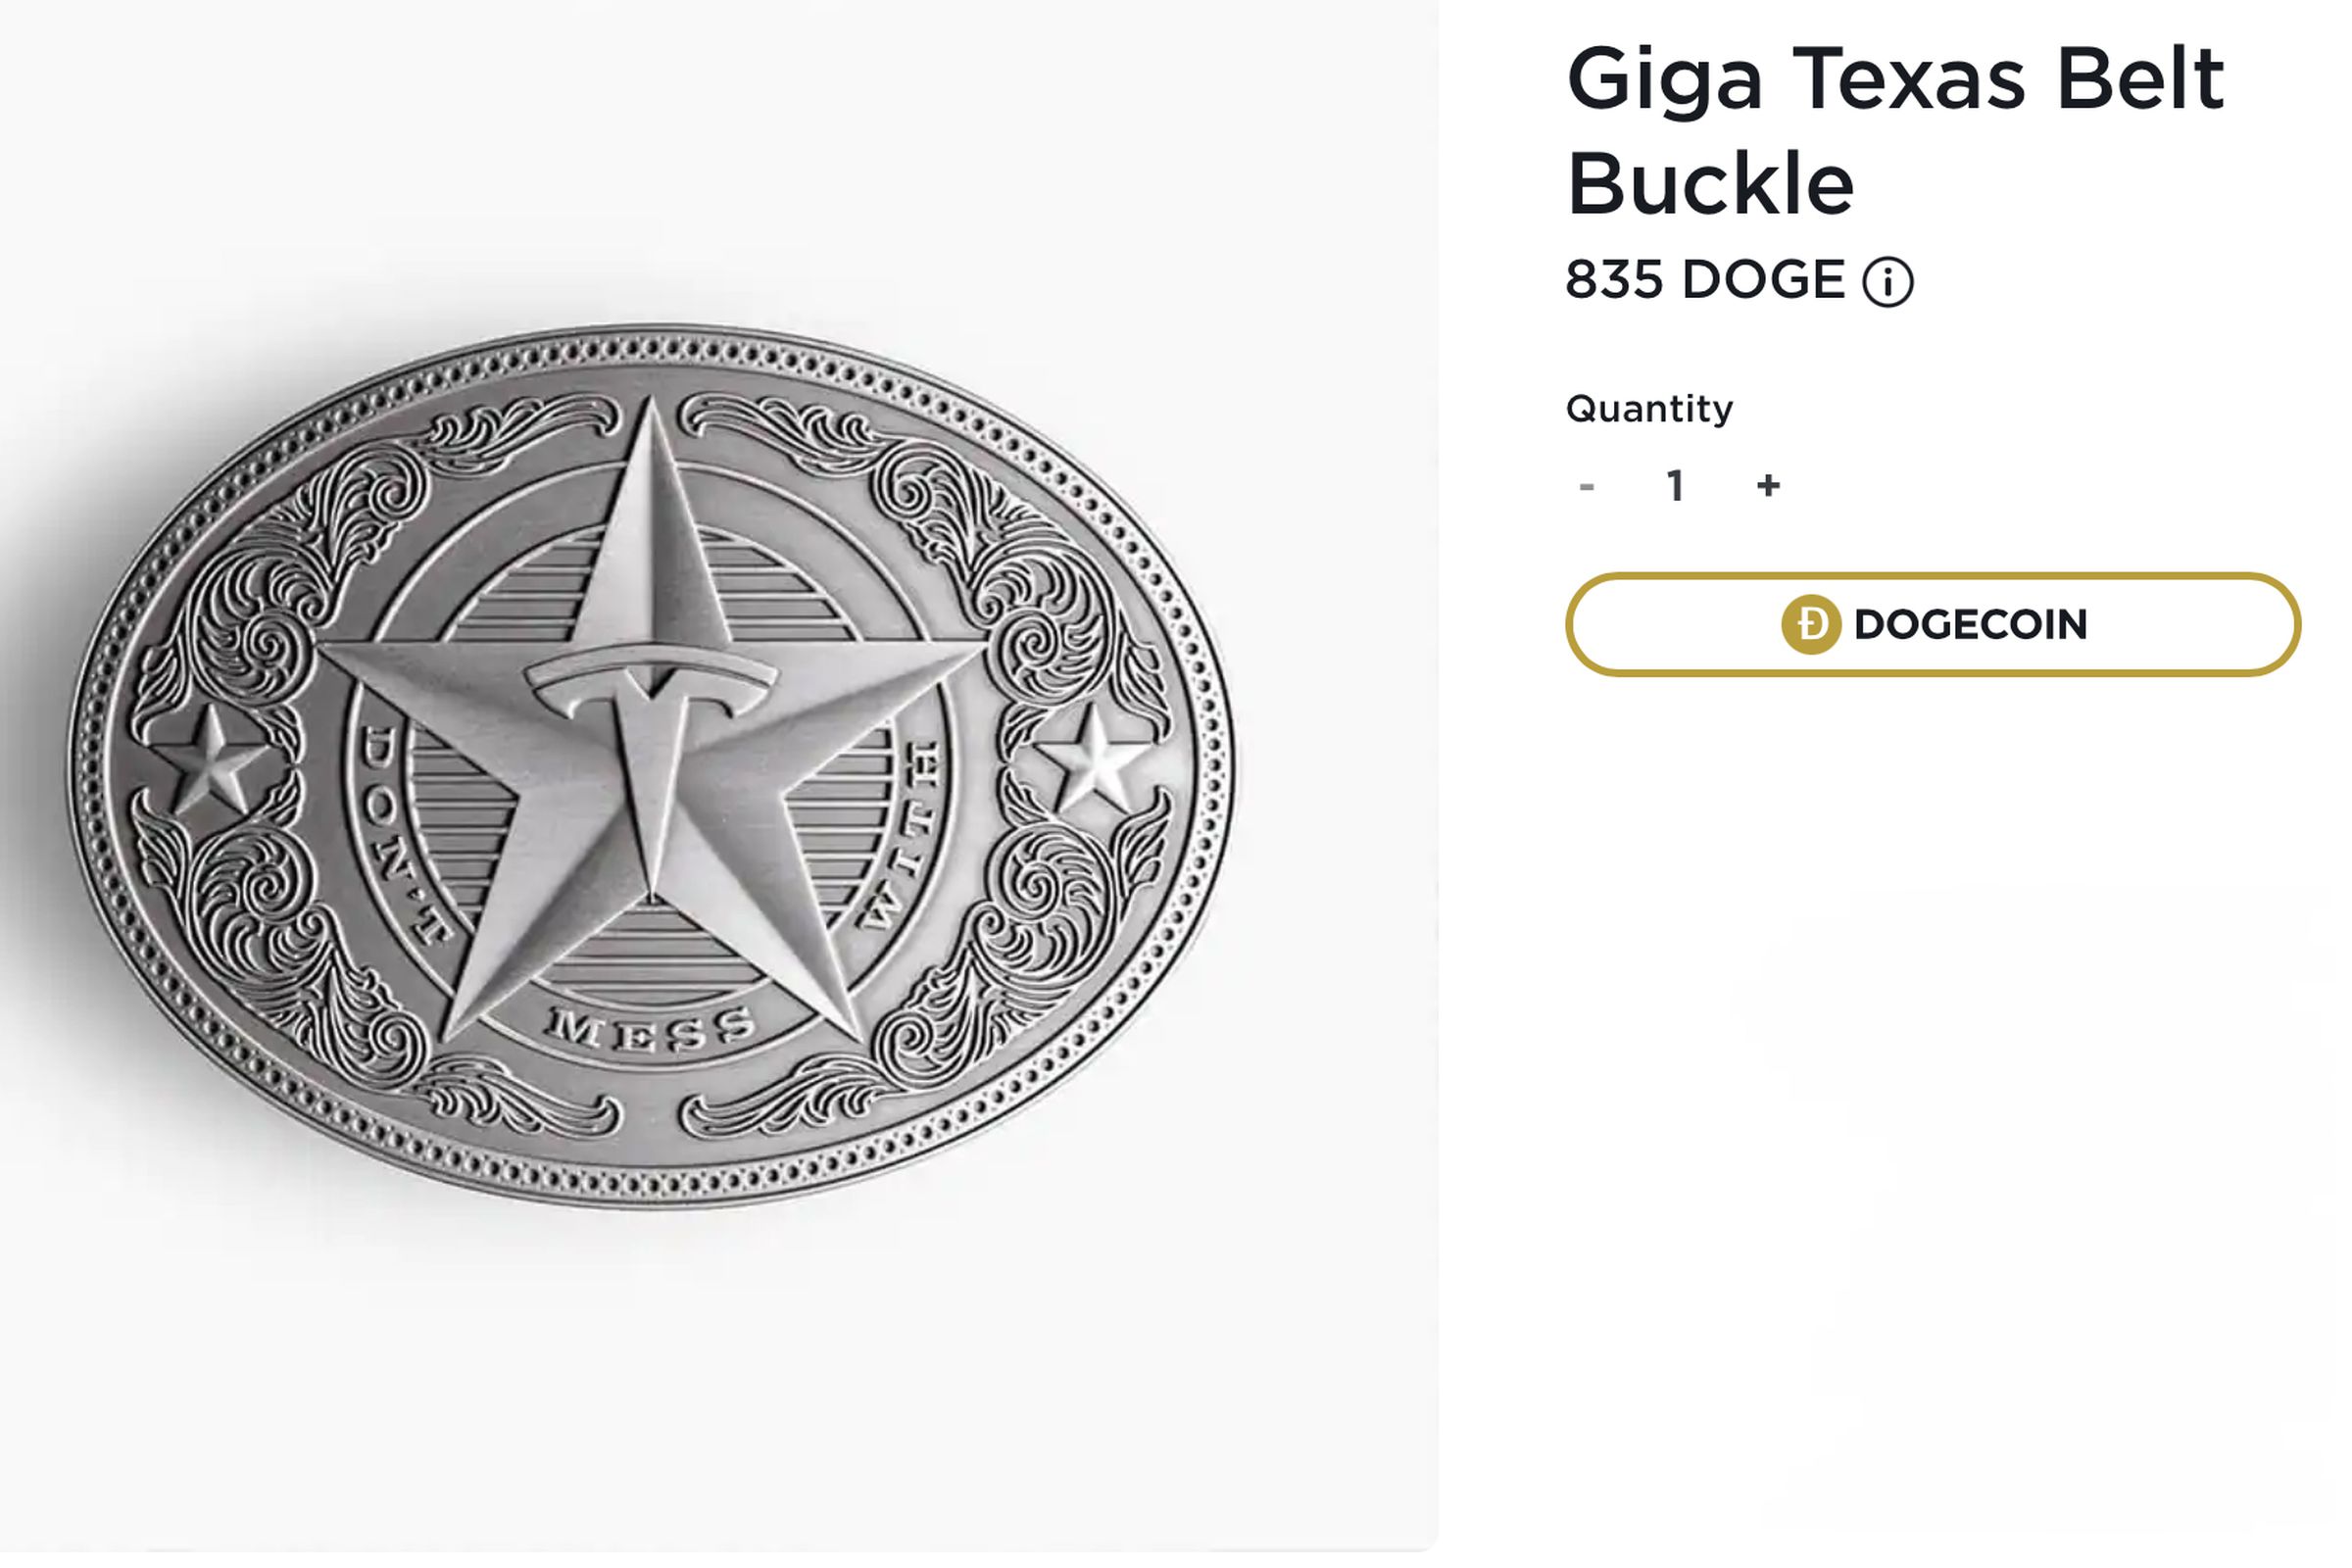 Giga Texas Belt Buckle now costs 835 DOGE.